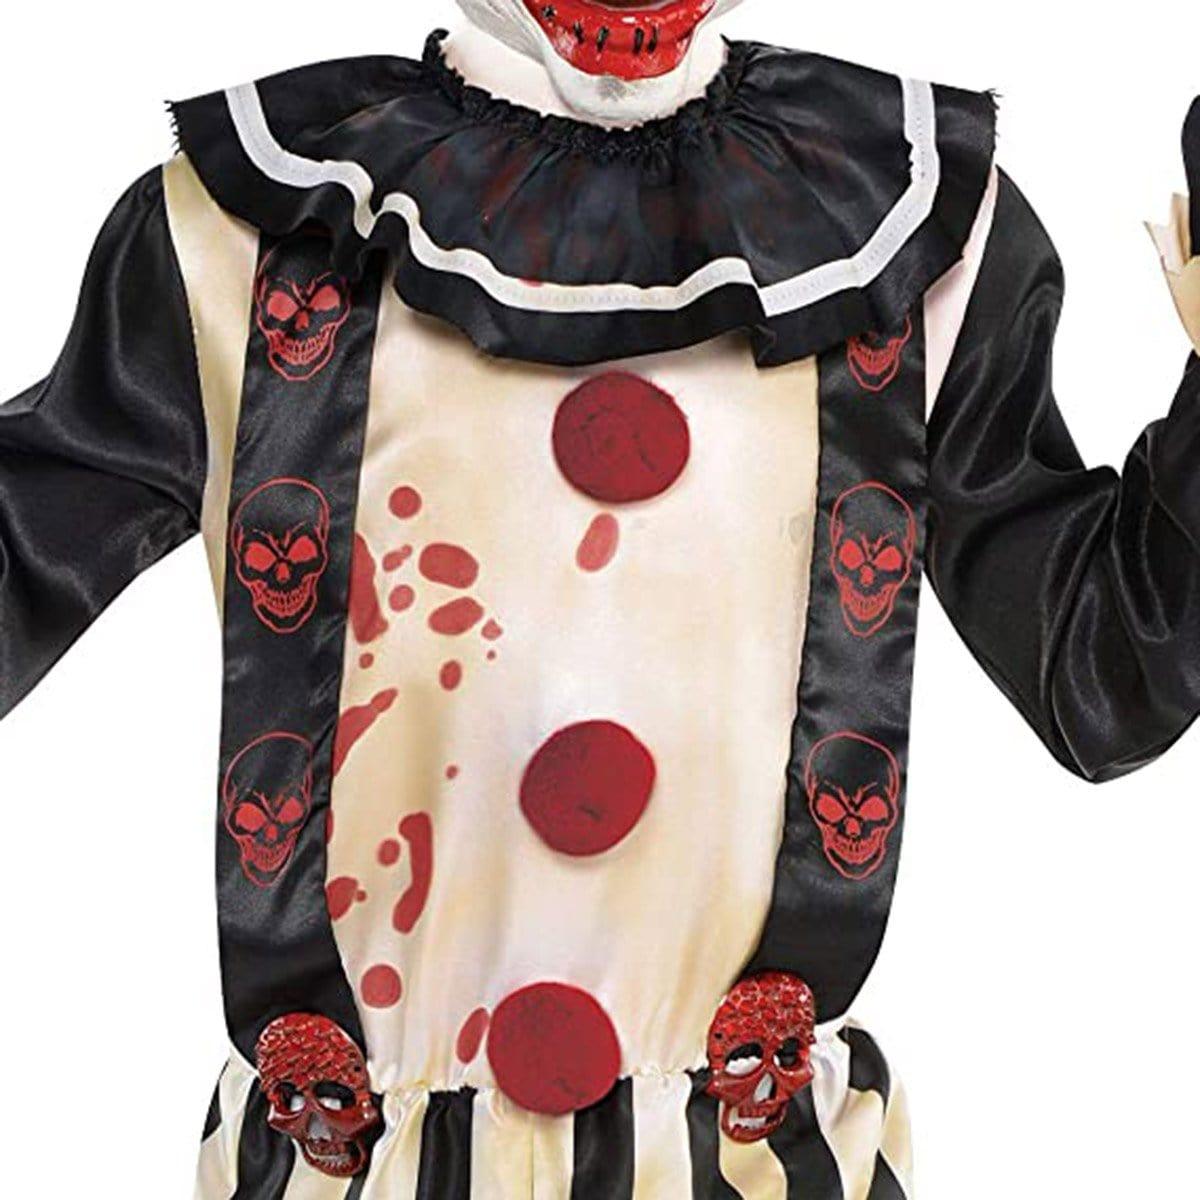 Slasher Clown Costume for Boys | Party Expert